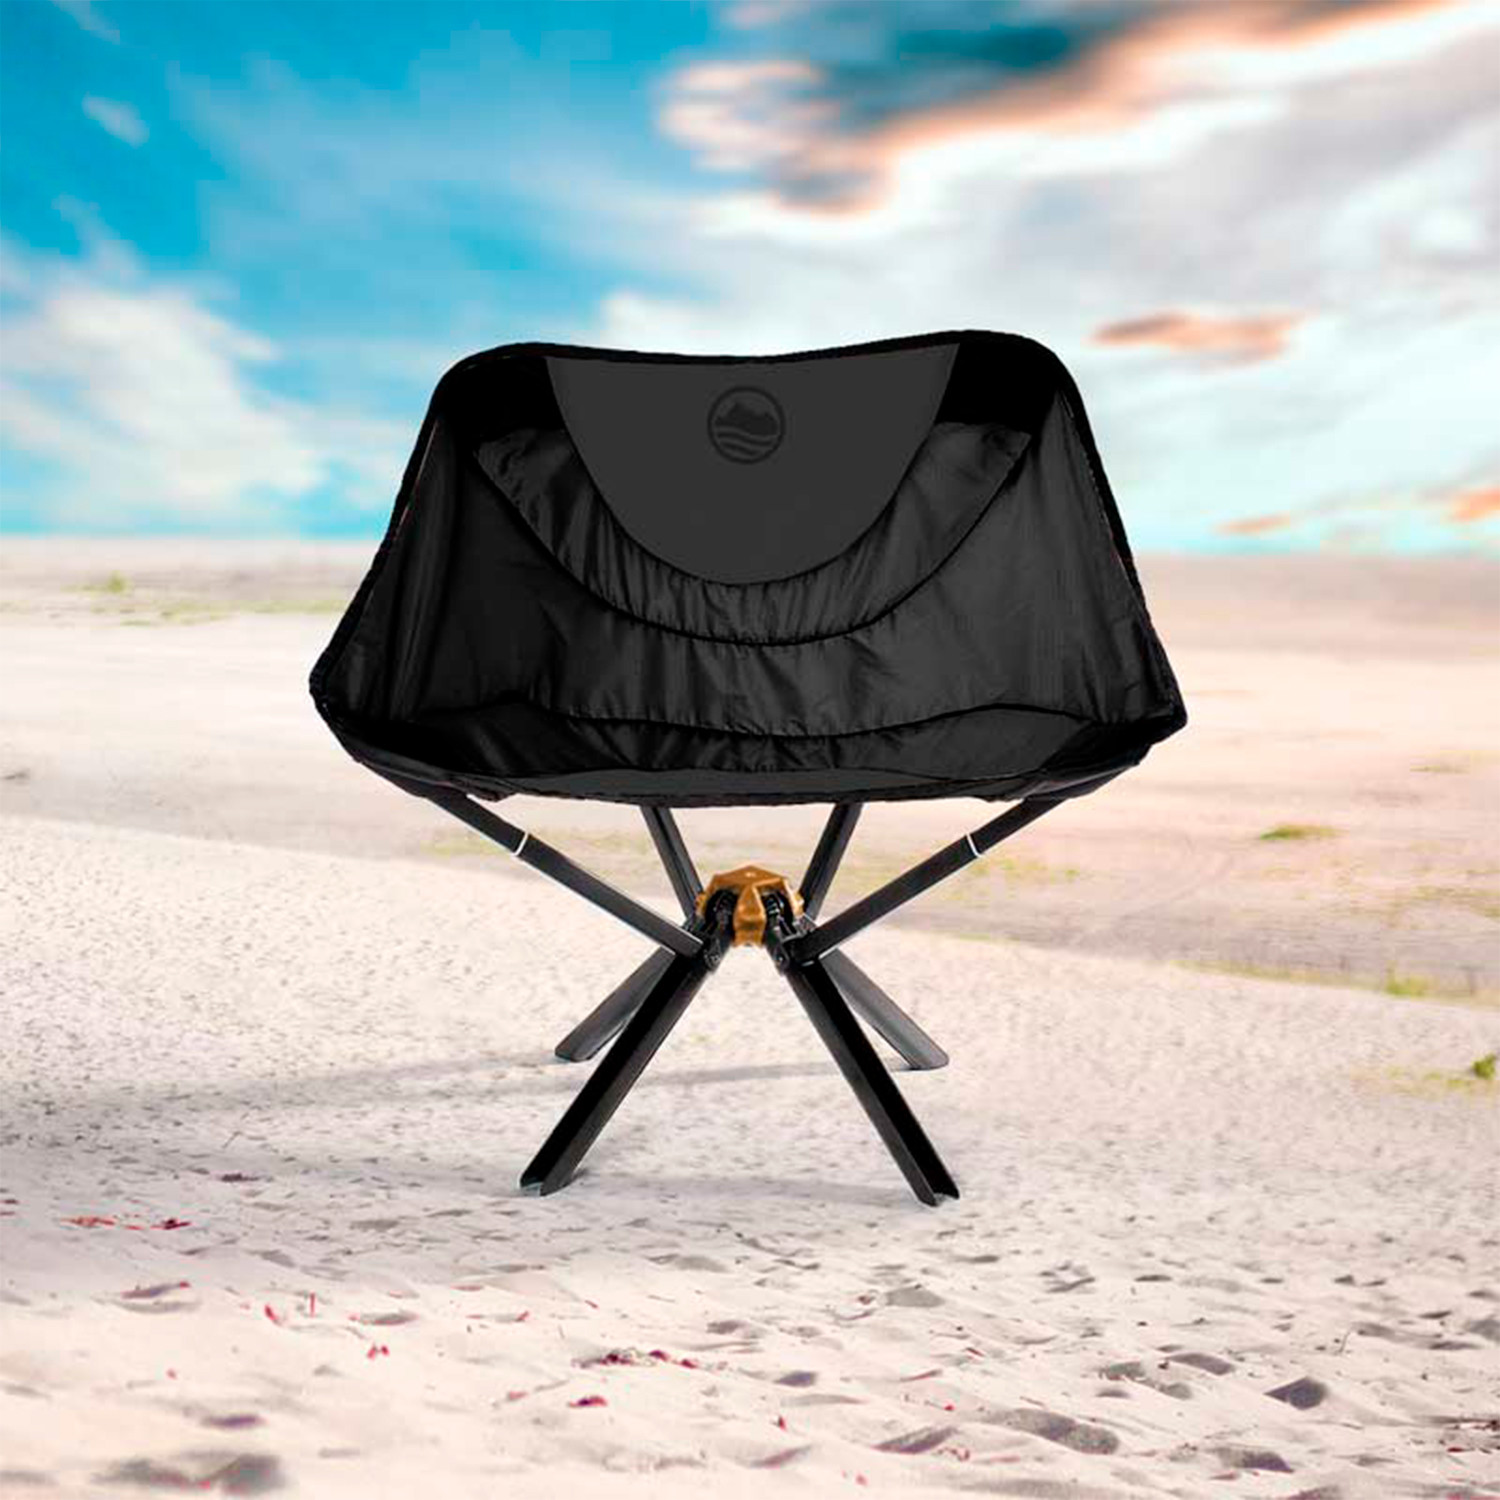 Cliq Chair The Bottle Sized Portable Chair Black Cliq Touch Of Modern